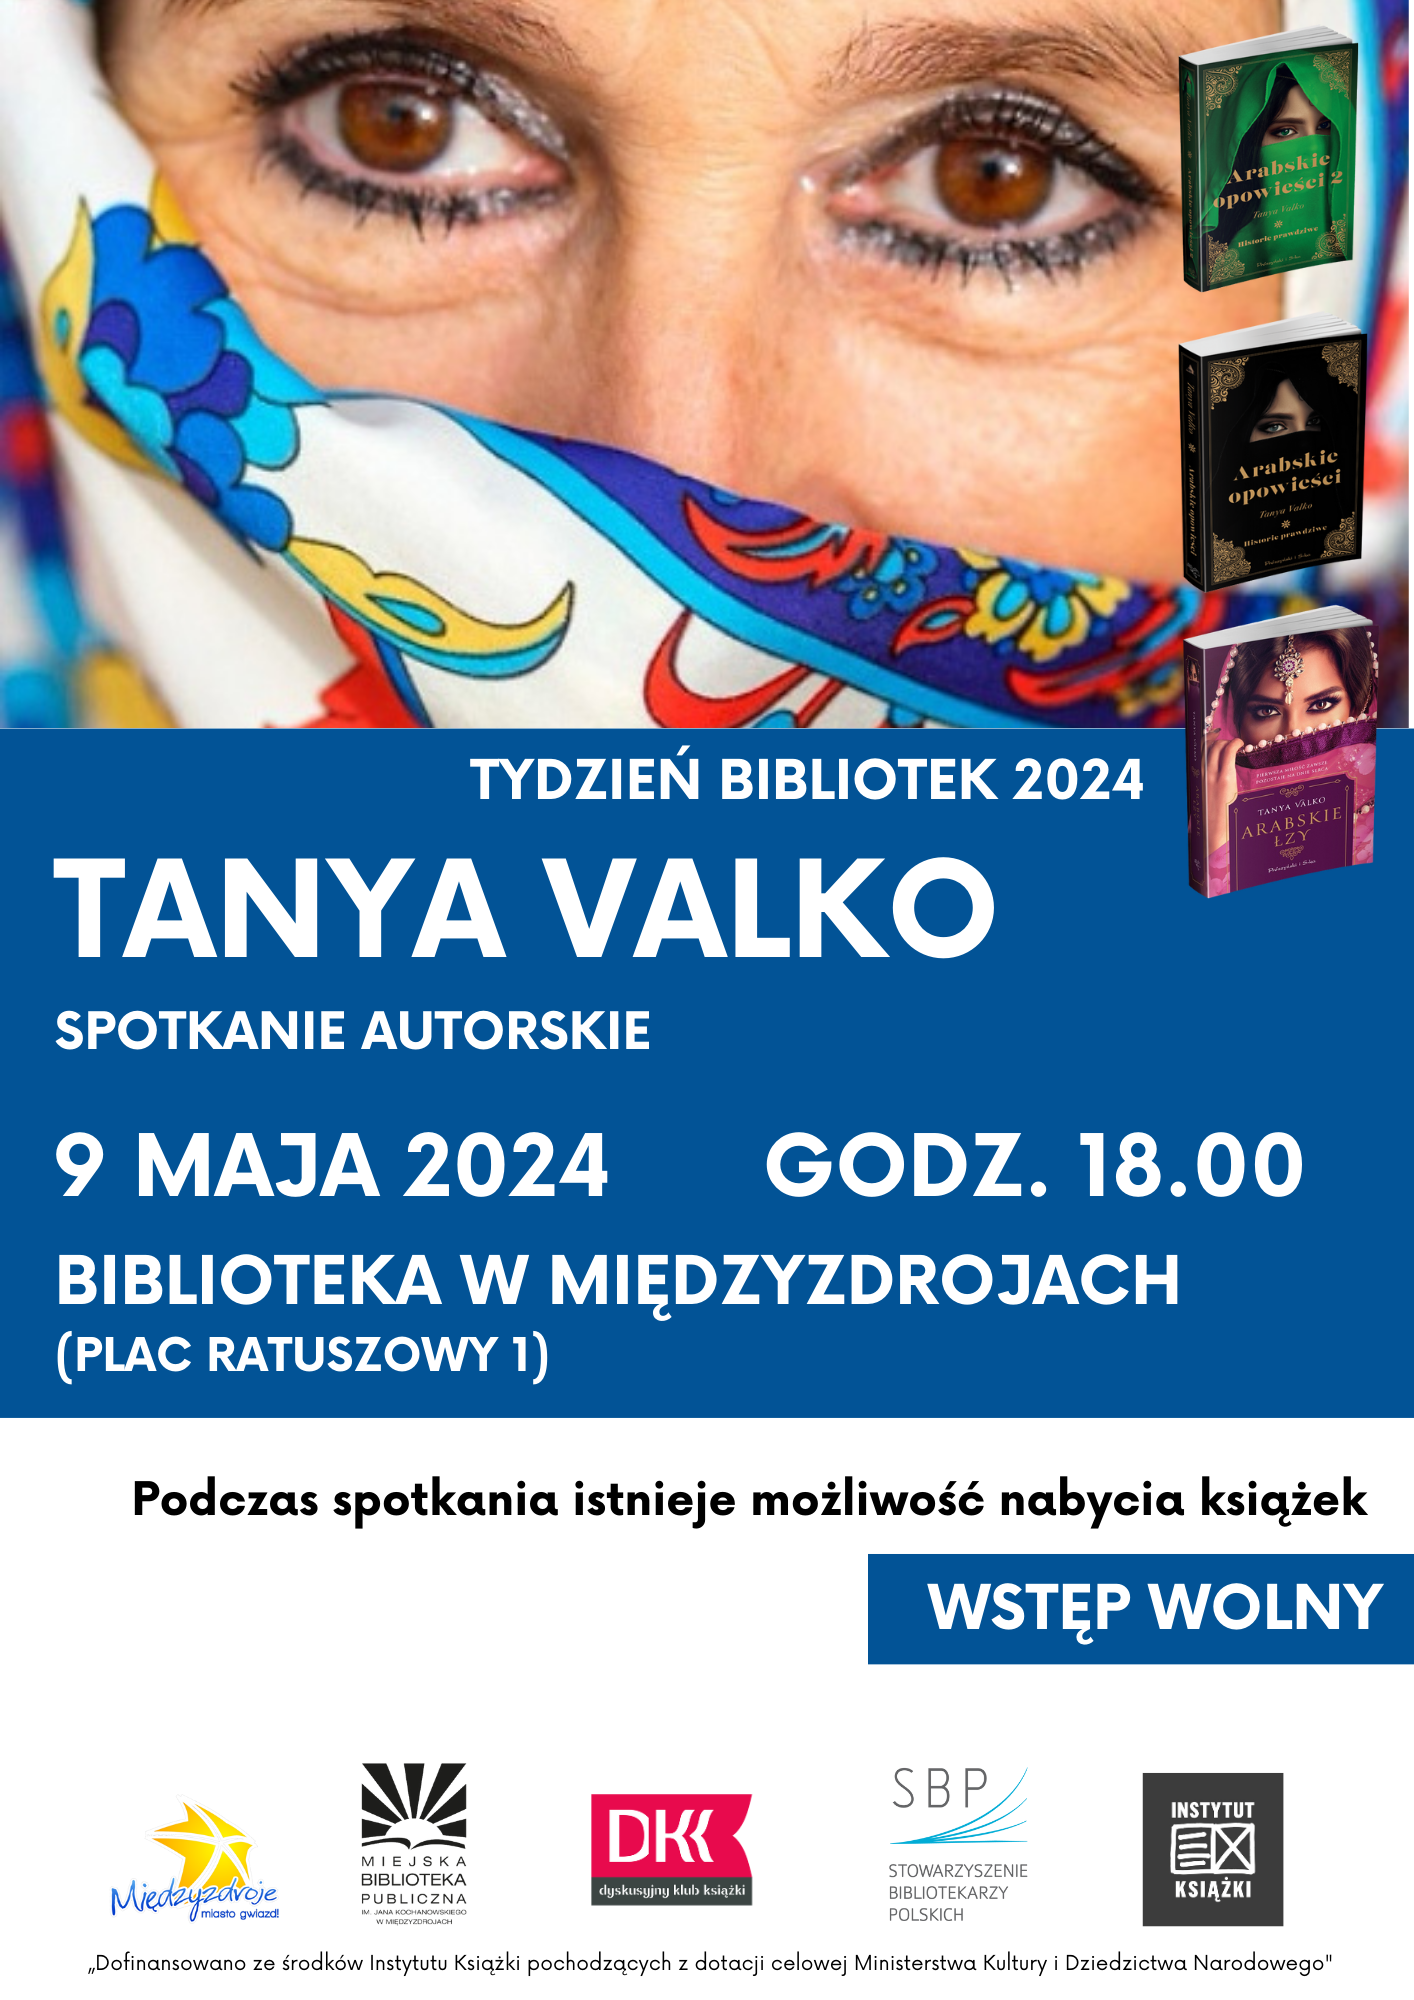 Spotkanie autorskie z Tanyą Valko w międzyzdrojskiej bibliotece 9 maja 2024 r. - zapowiedź